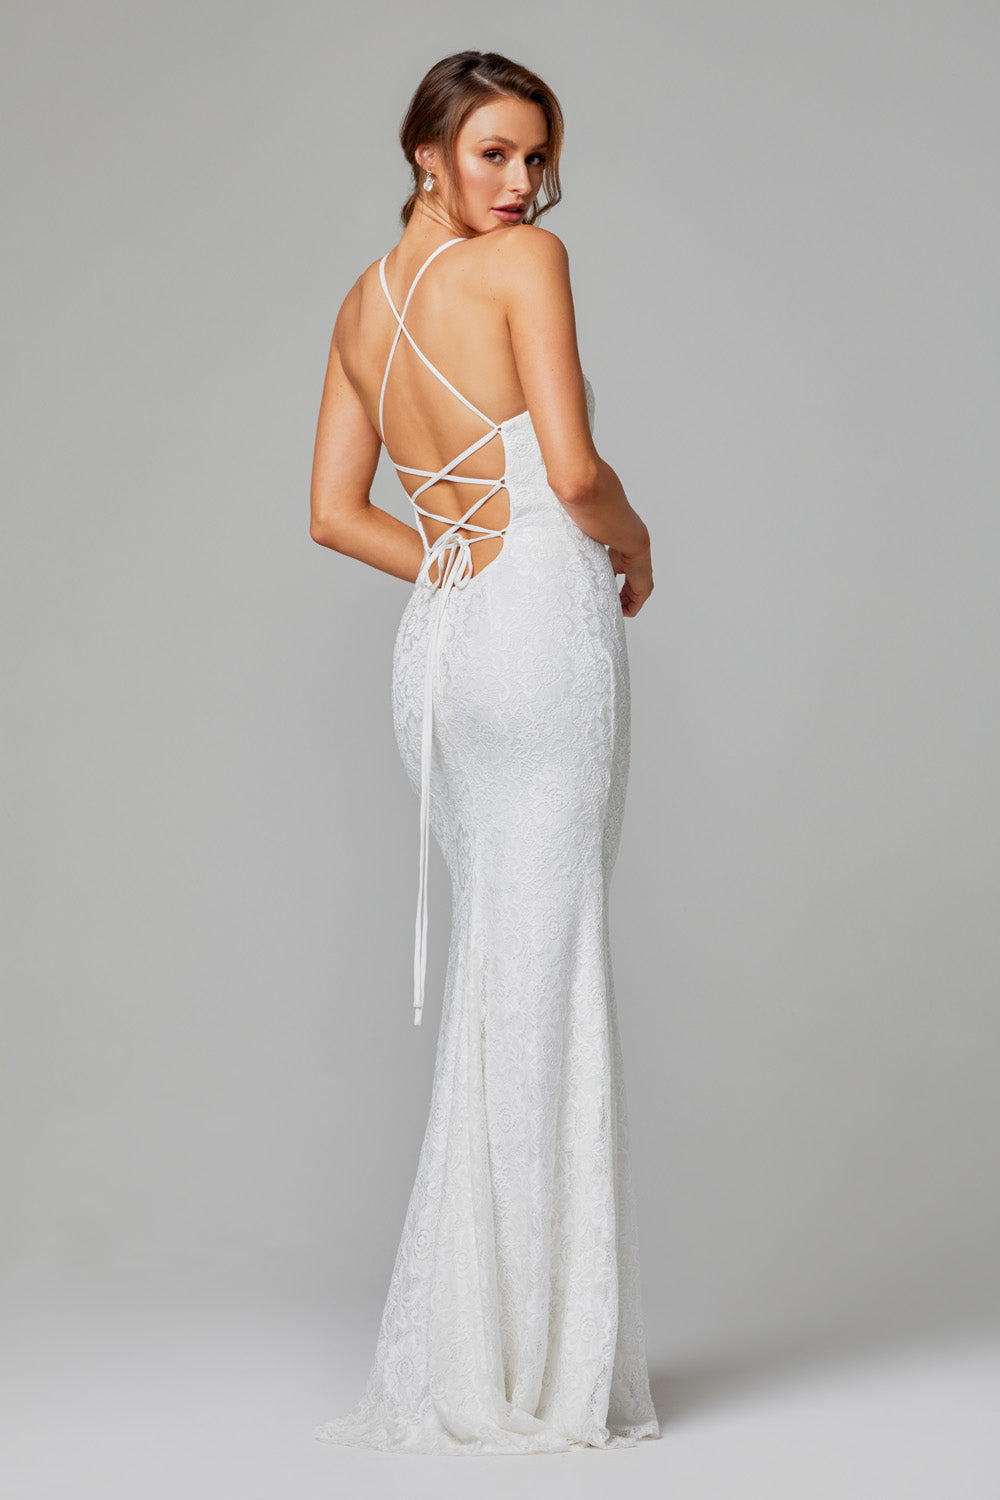 low back lace bridal gown australia